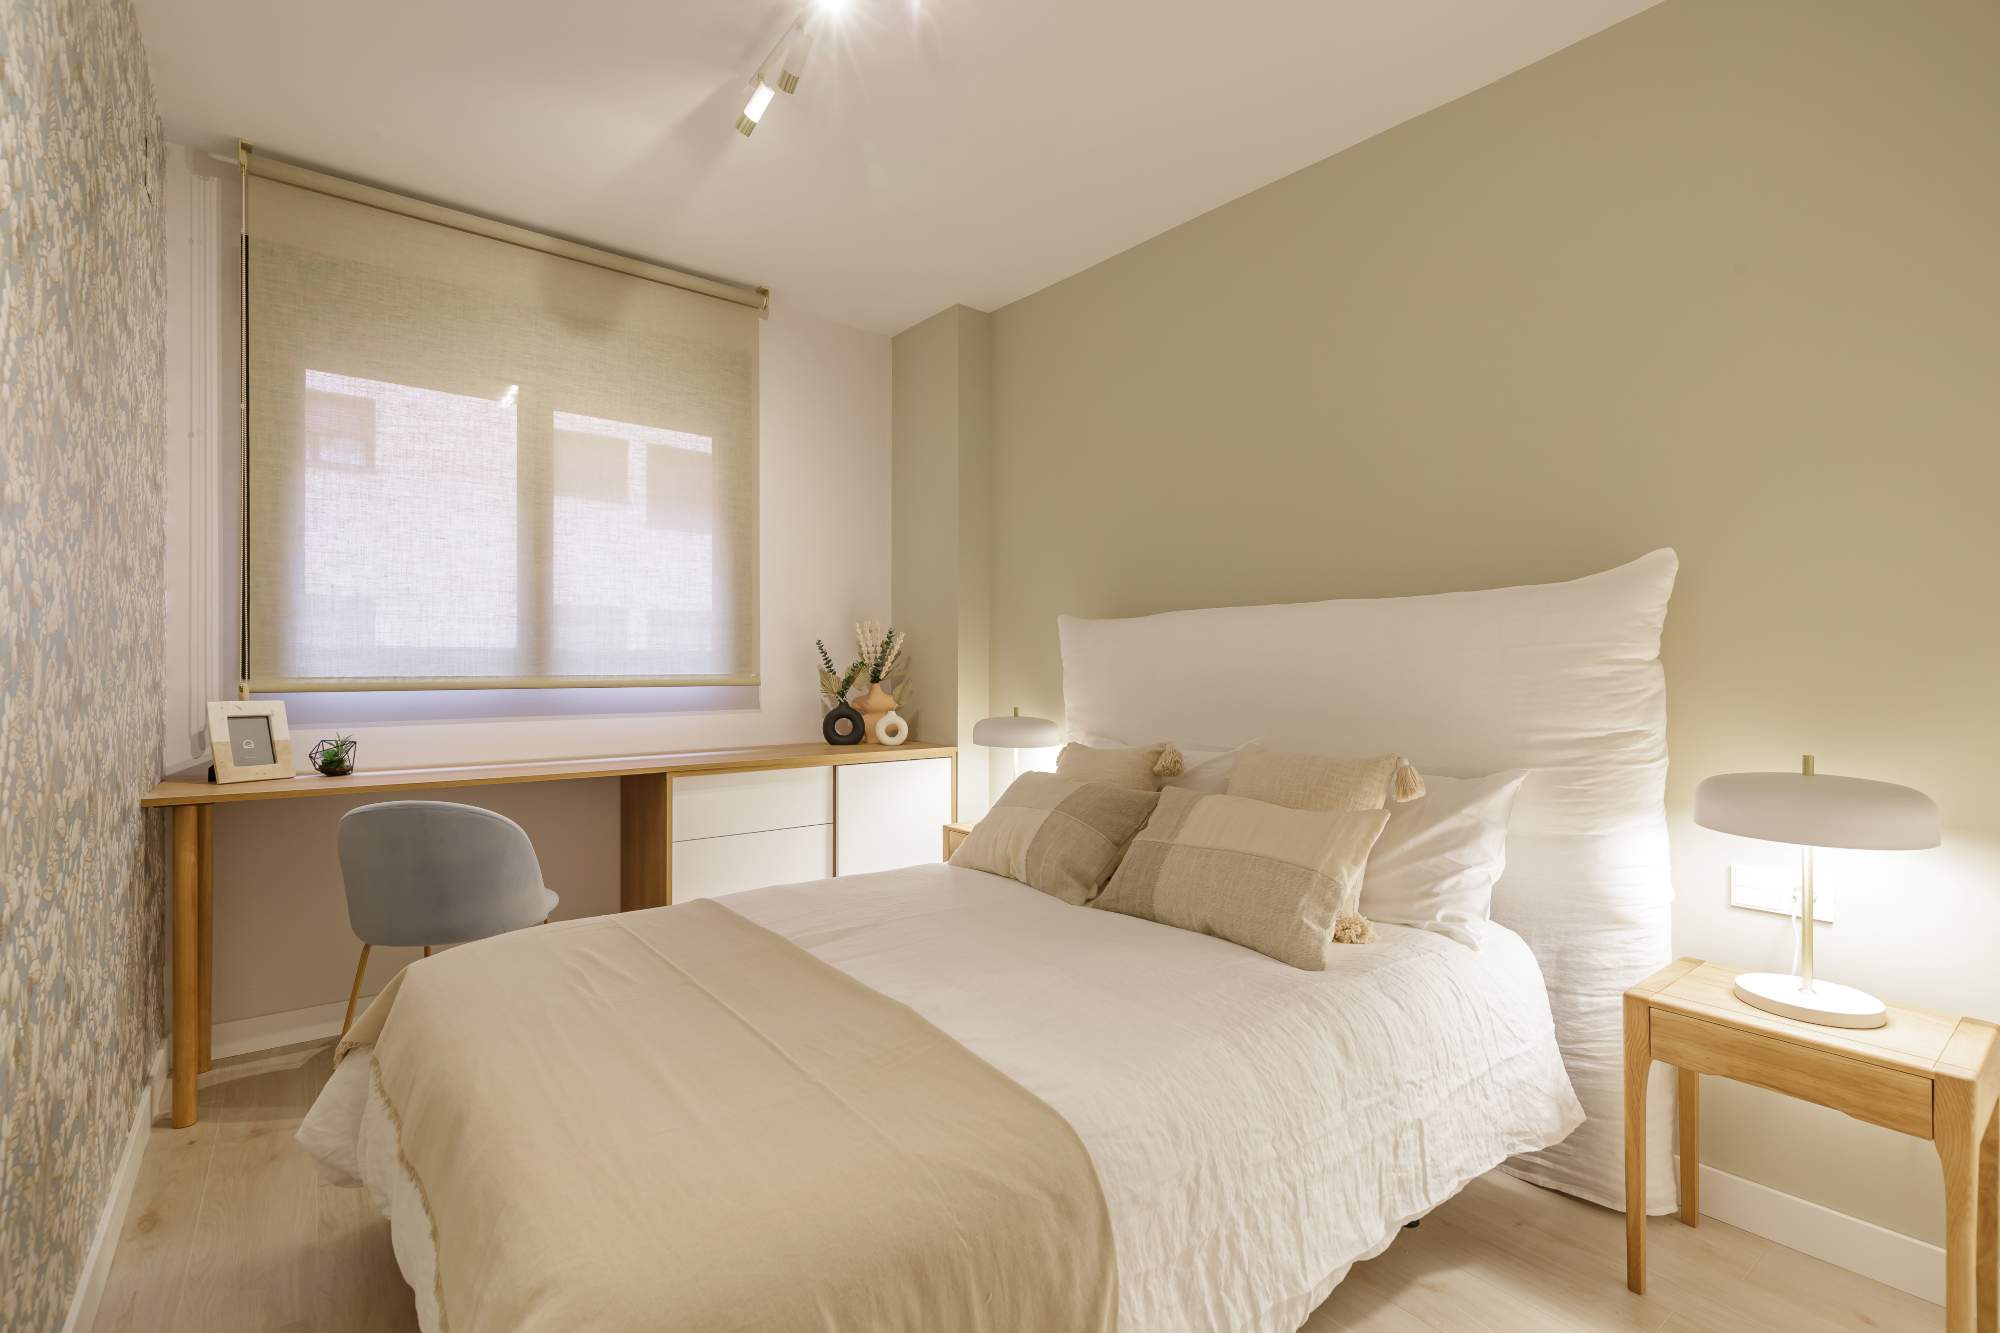 Dormitorio de invitados en tonos beige.